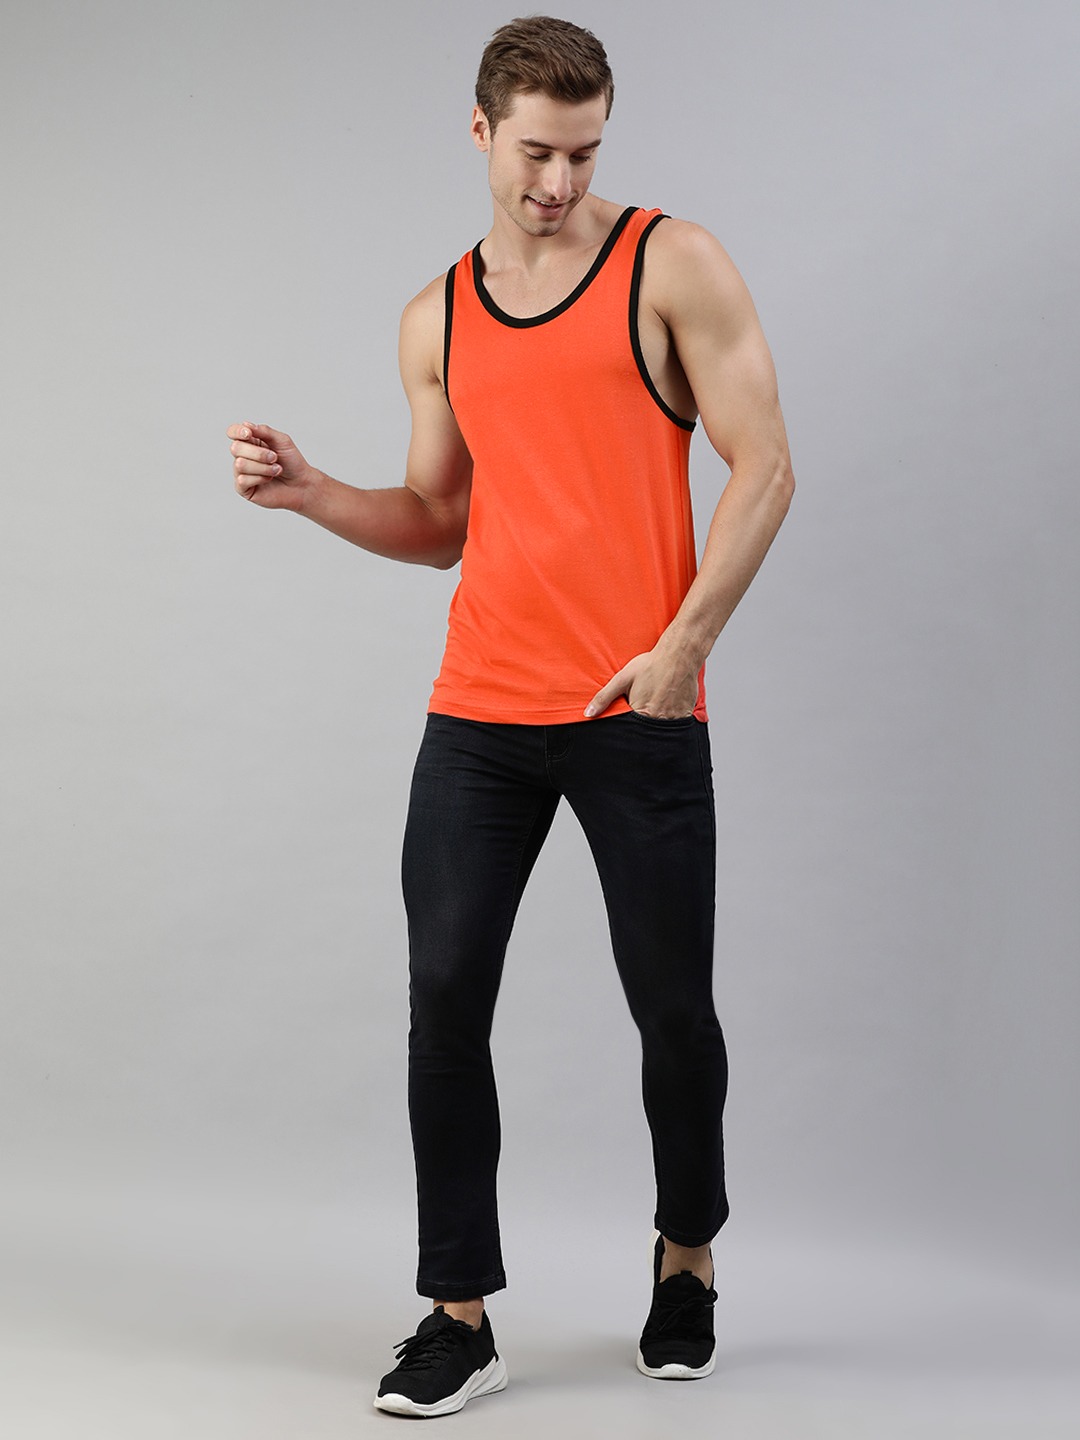 Clothing Innerwear Vests | abof Men Orange & White Printed Pure Cotton Innerwear Vest - GT61160